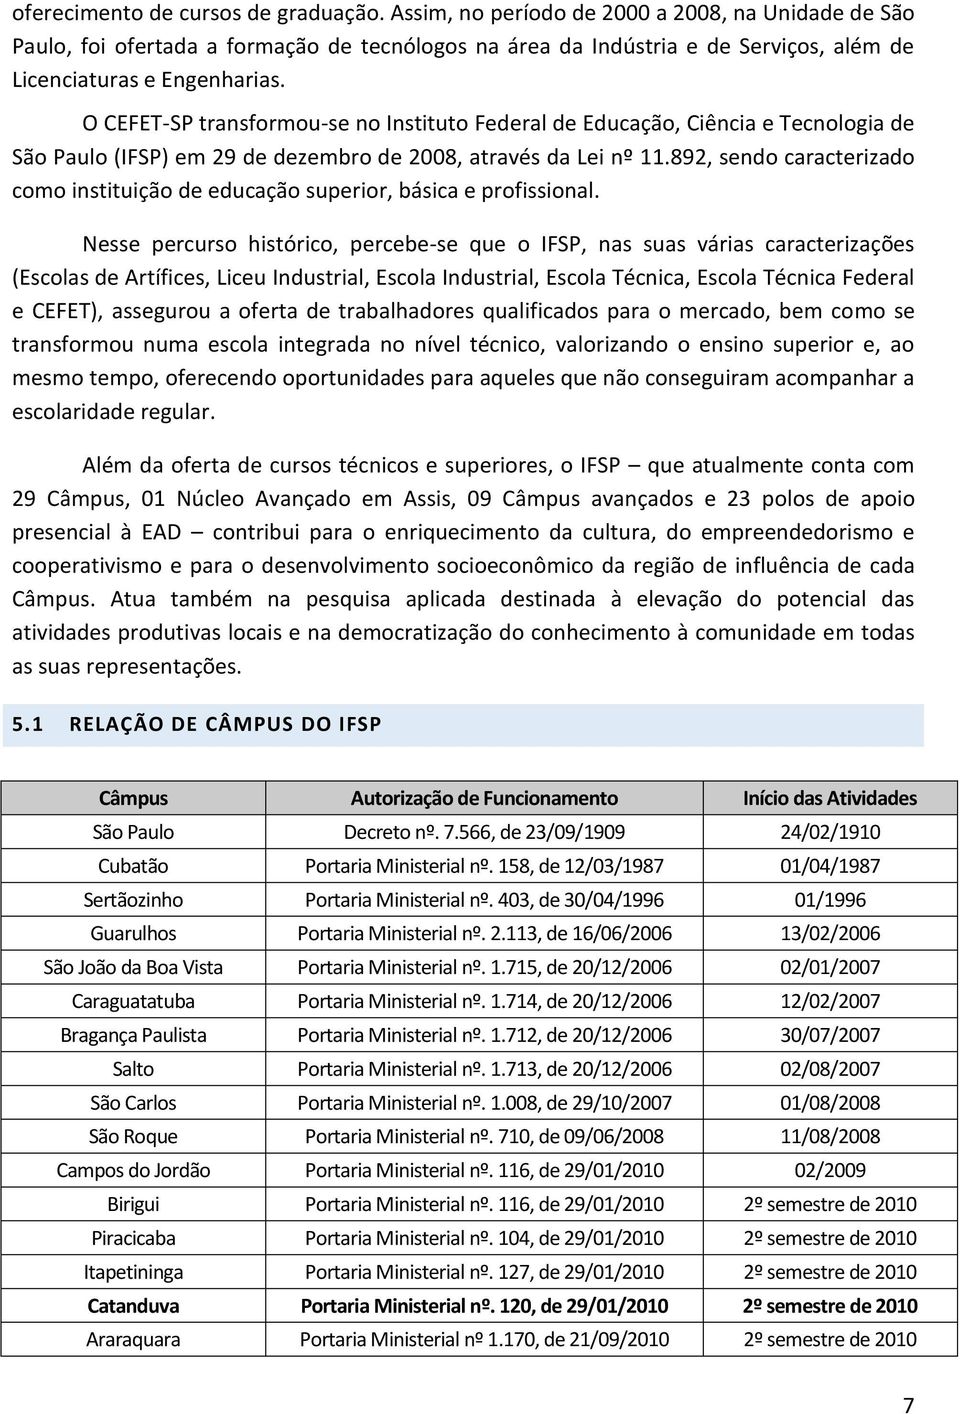 O CEFET-SP transformou-se no Instituto Federal de Educação, Ciência e Tecnologia de São Paulo (IFSP) em 29 de dezembro de 2008, através da Lei nº 11.